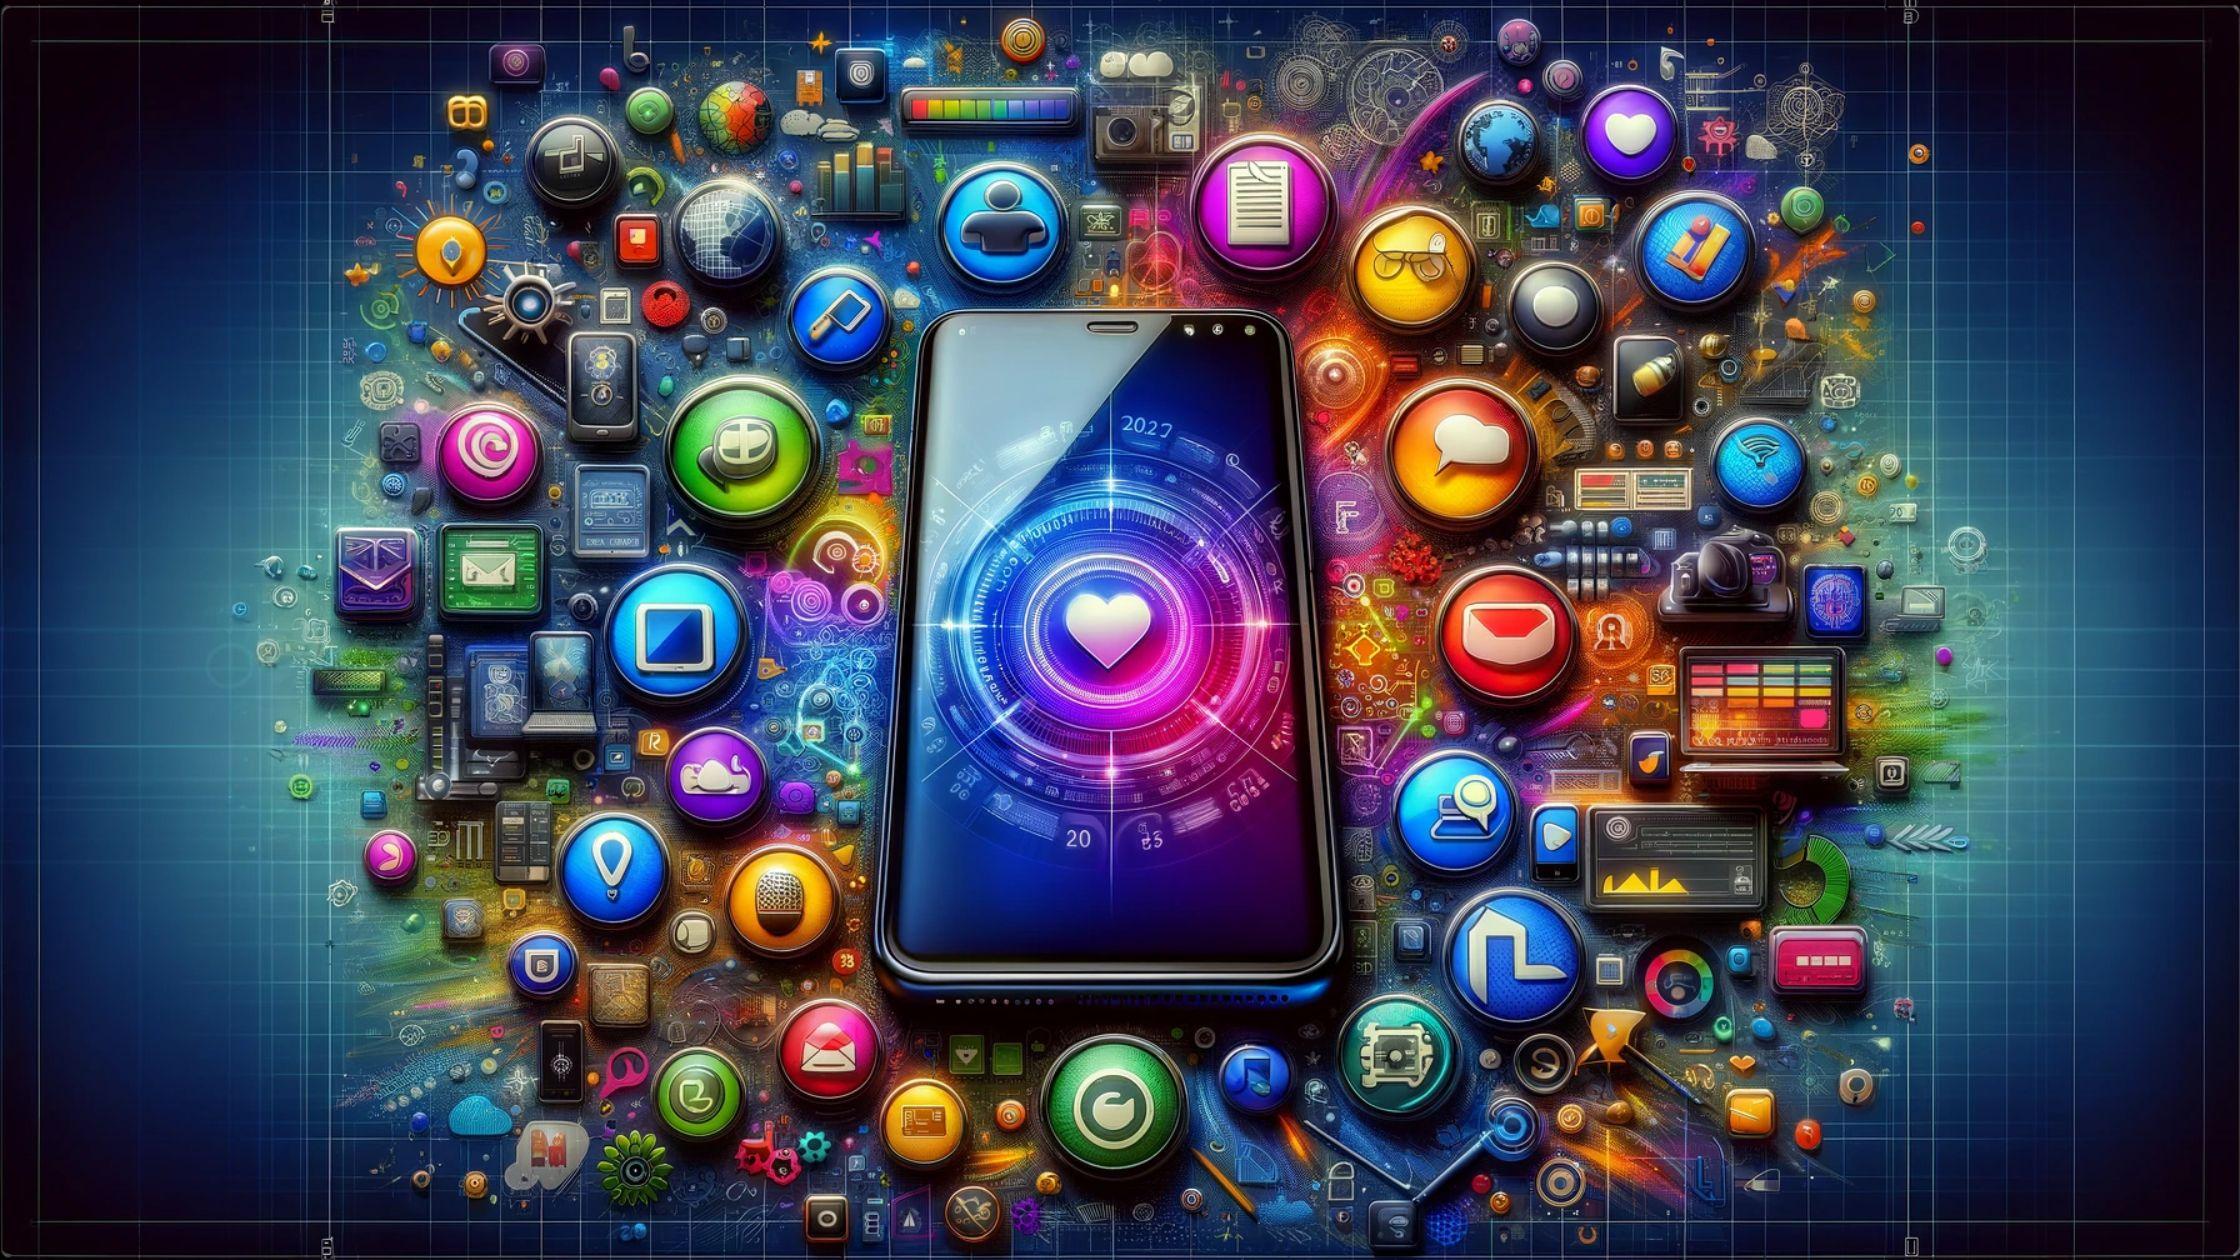 لا تفوتها: أقوى 10 تطبيقات يجب أن تكون على هاتفك الذكي الآن!